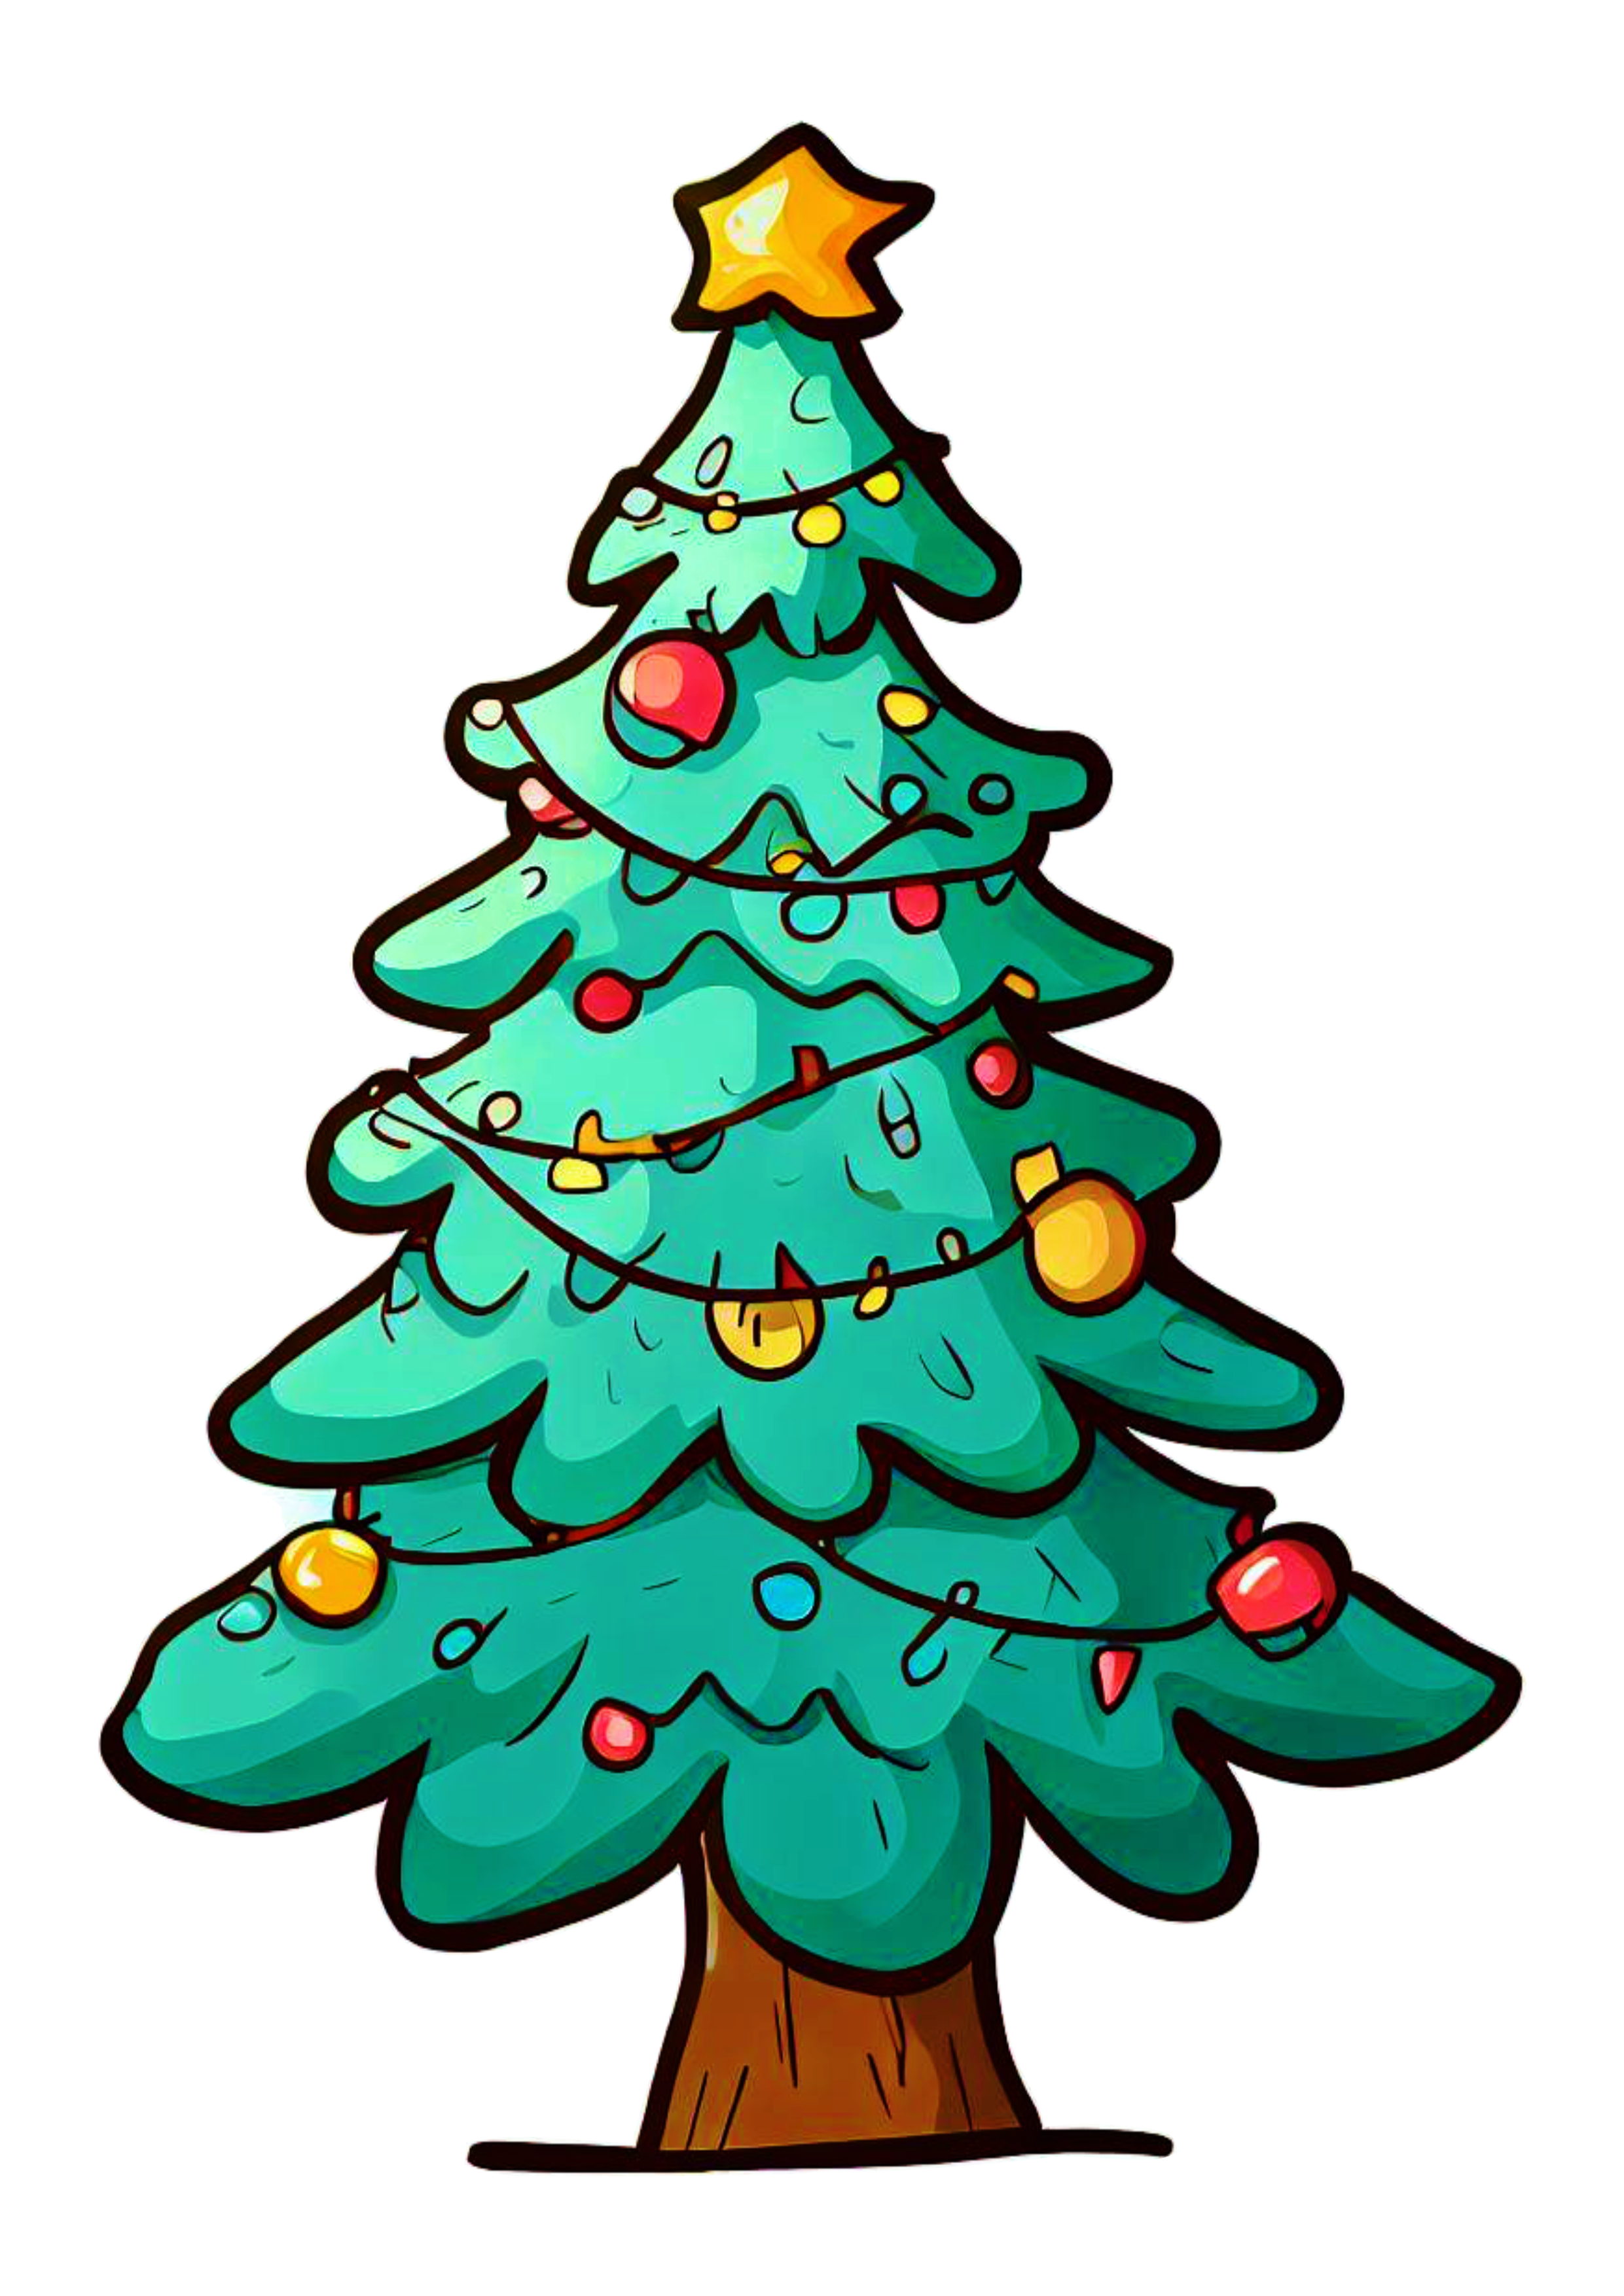 Árvore de natal desenho simples decoração natalina pack de imagens fundo transparente artes gráficas design png